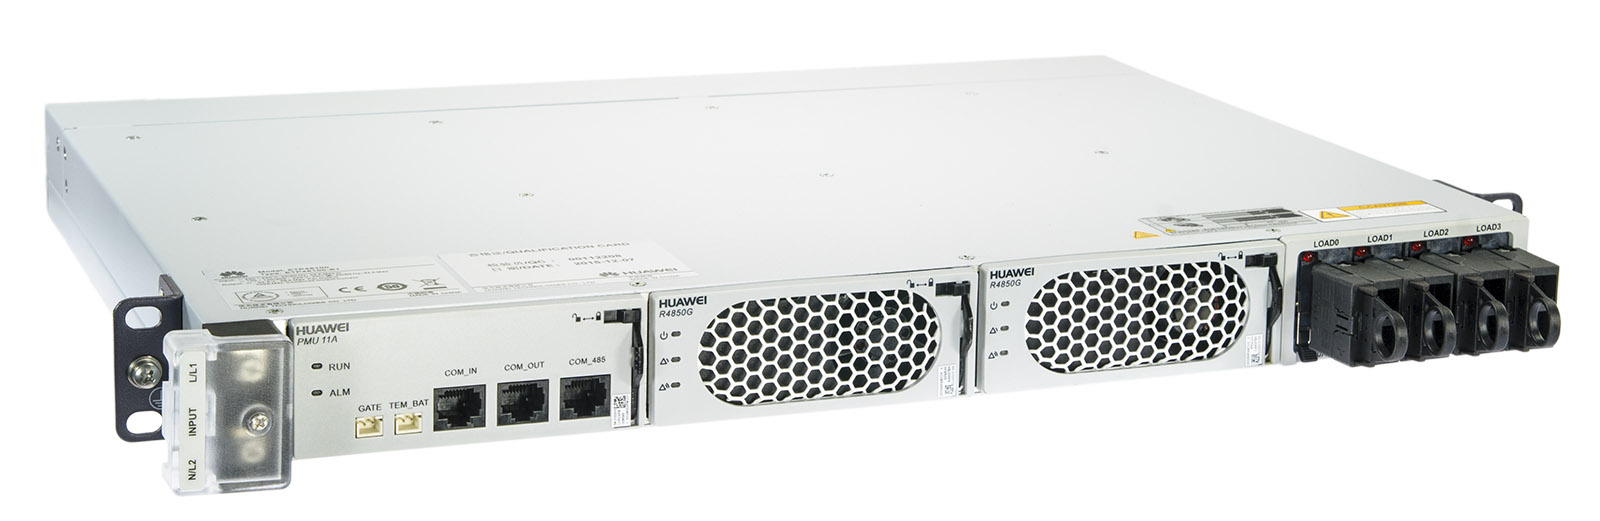 Huawei ETP48100-B1-50A power supply 48 V DC, 100 A